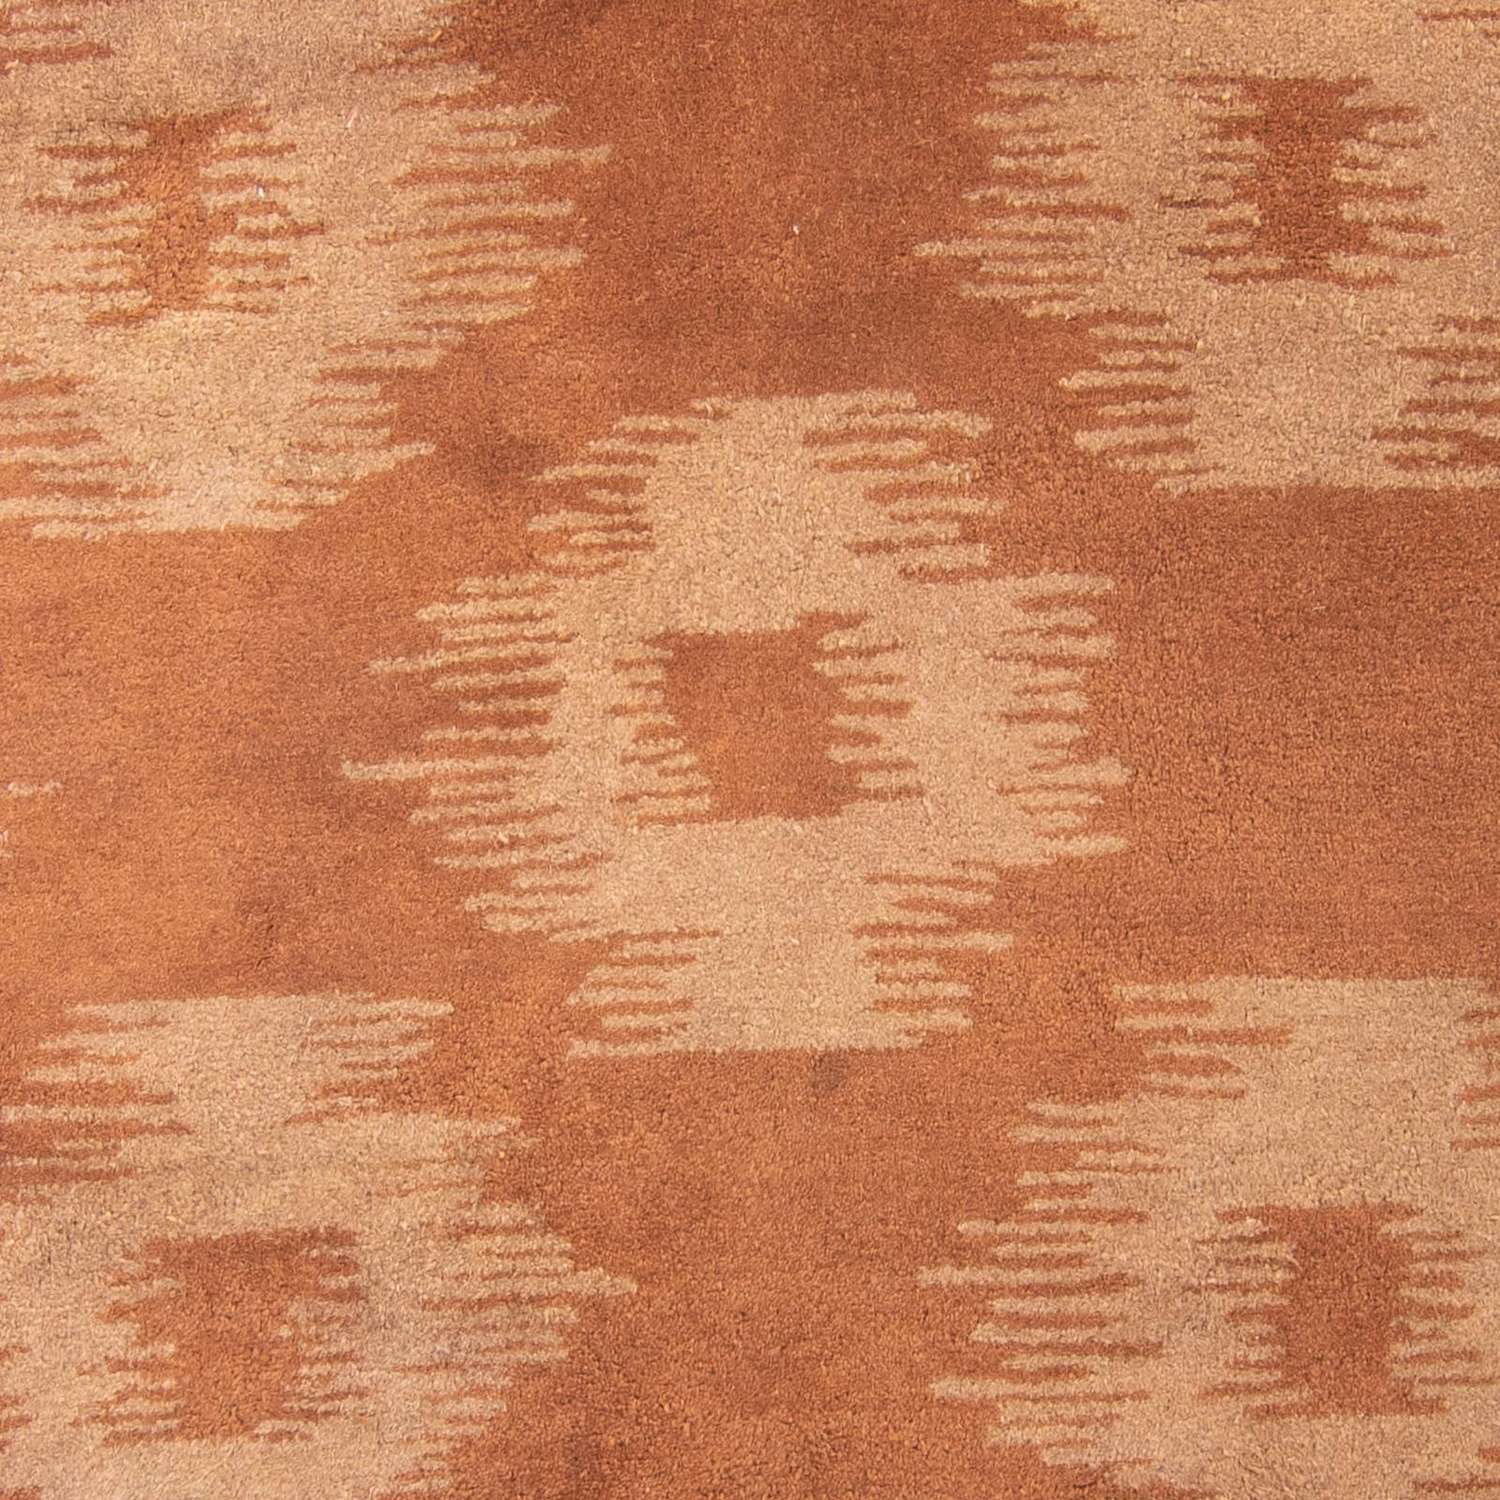 Wool Rug - 235 x 148 cm - brown